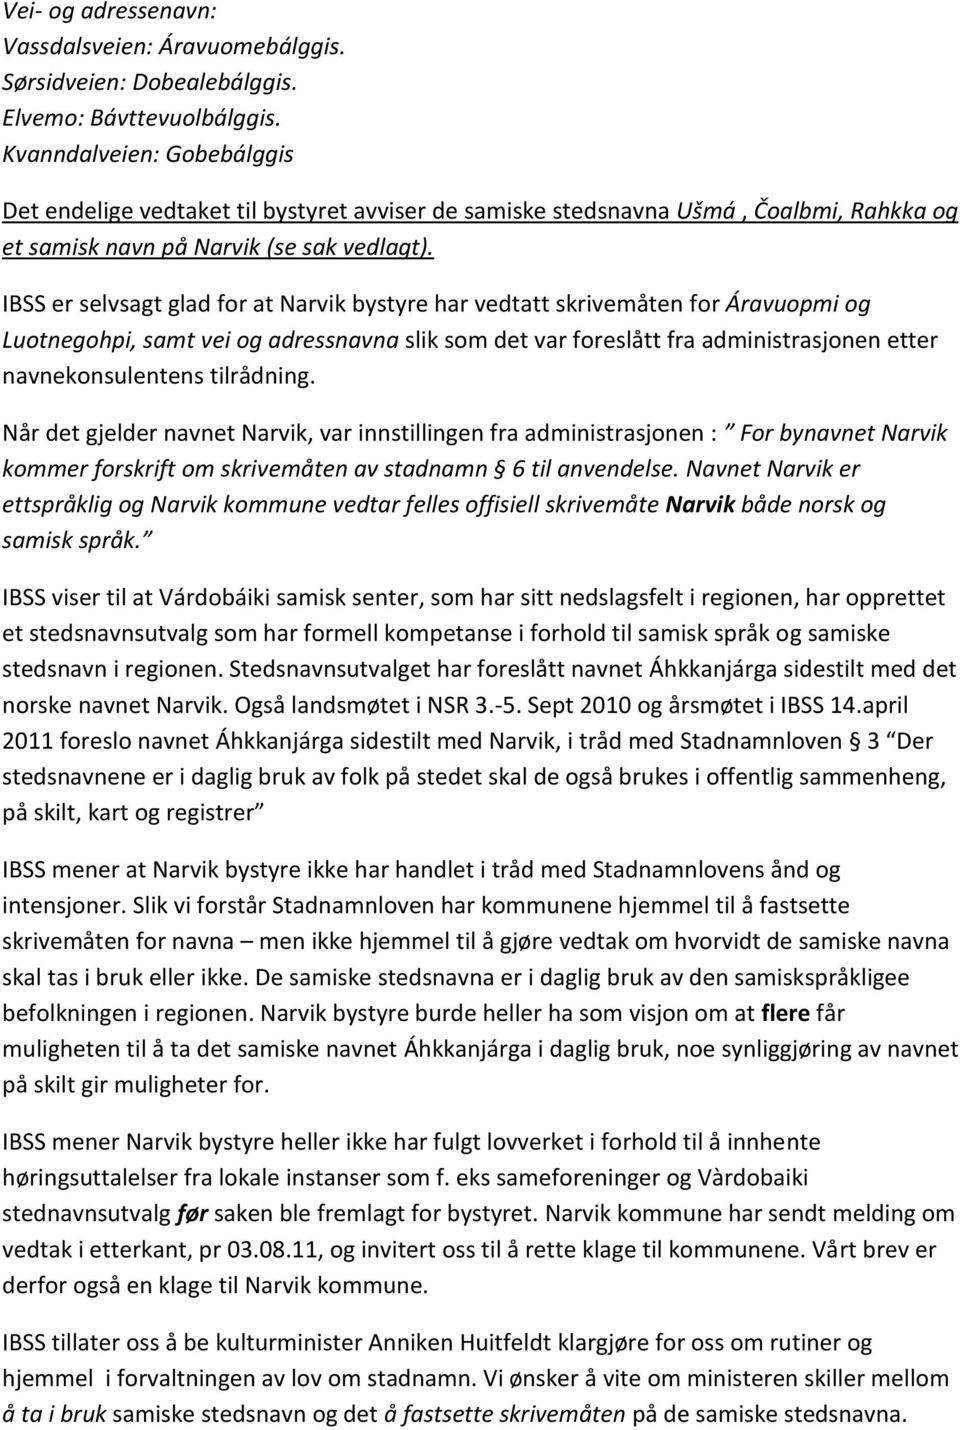 IBSS er selvsagt glad for at Narvik bystyre har vedtatt skrivemåten for Áravuopmi og Luotnegohpi, samt vei og adressnavna slik som det var foreslått fra administrasjonen etter navnekonsulentens